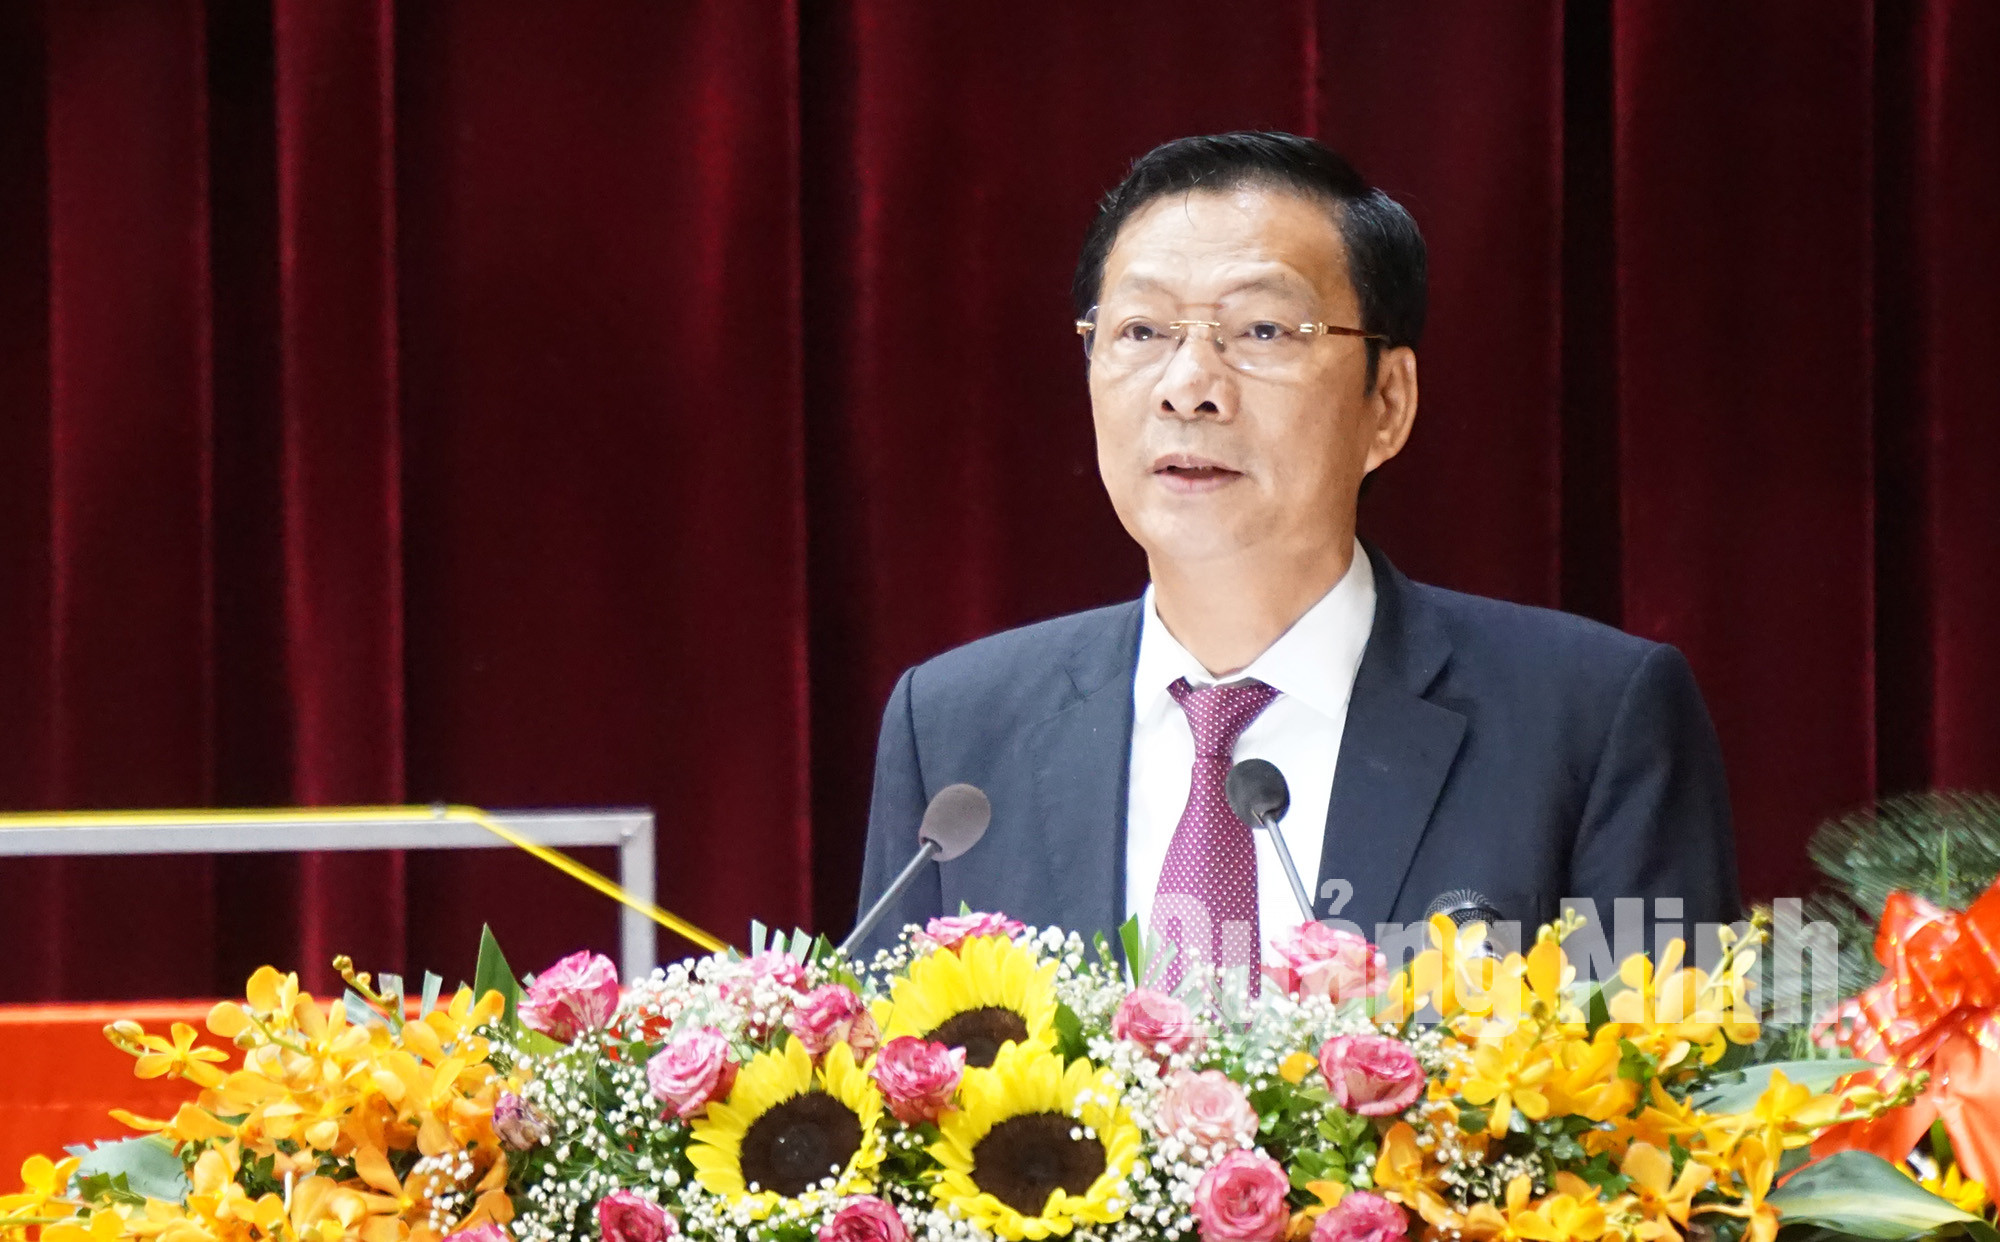 Đồng chí Nguyễn Văn Đọc, Bí thư Tỉnh ủy, phát biểu tại Đại hội.